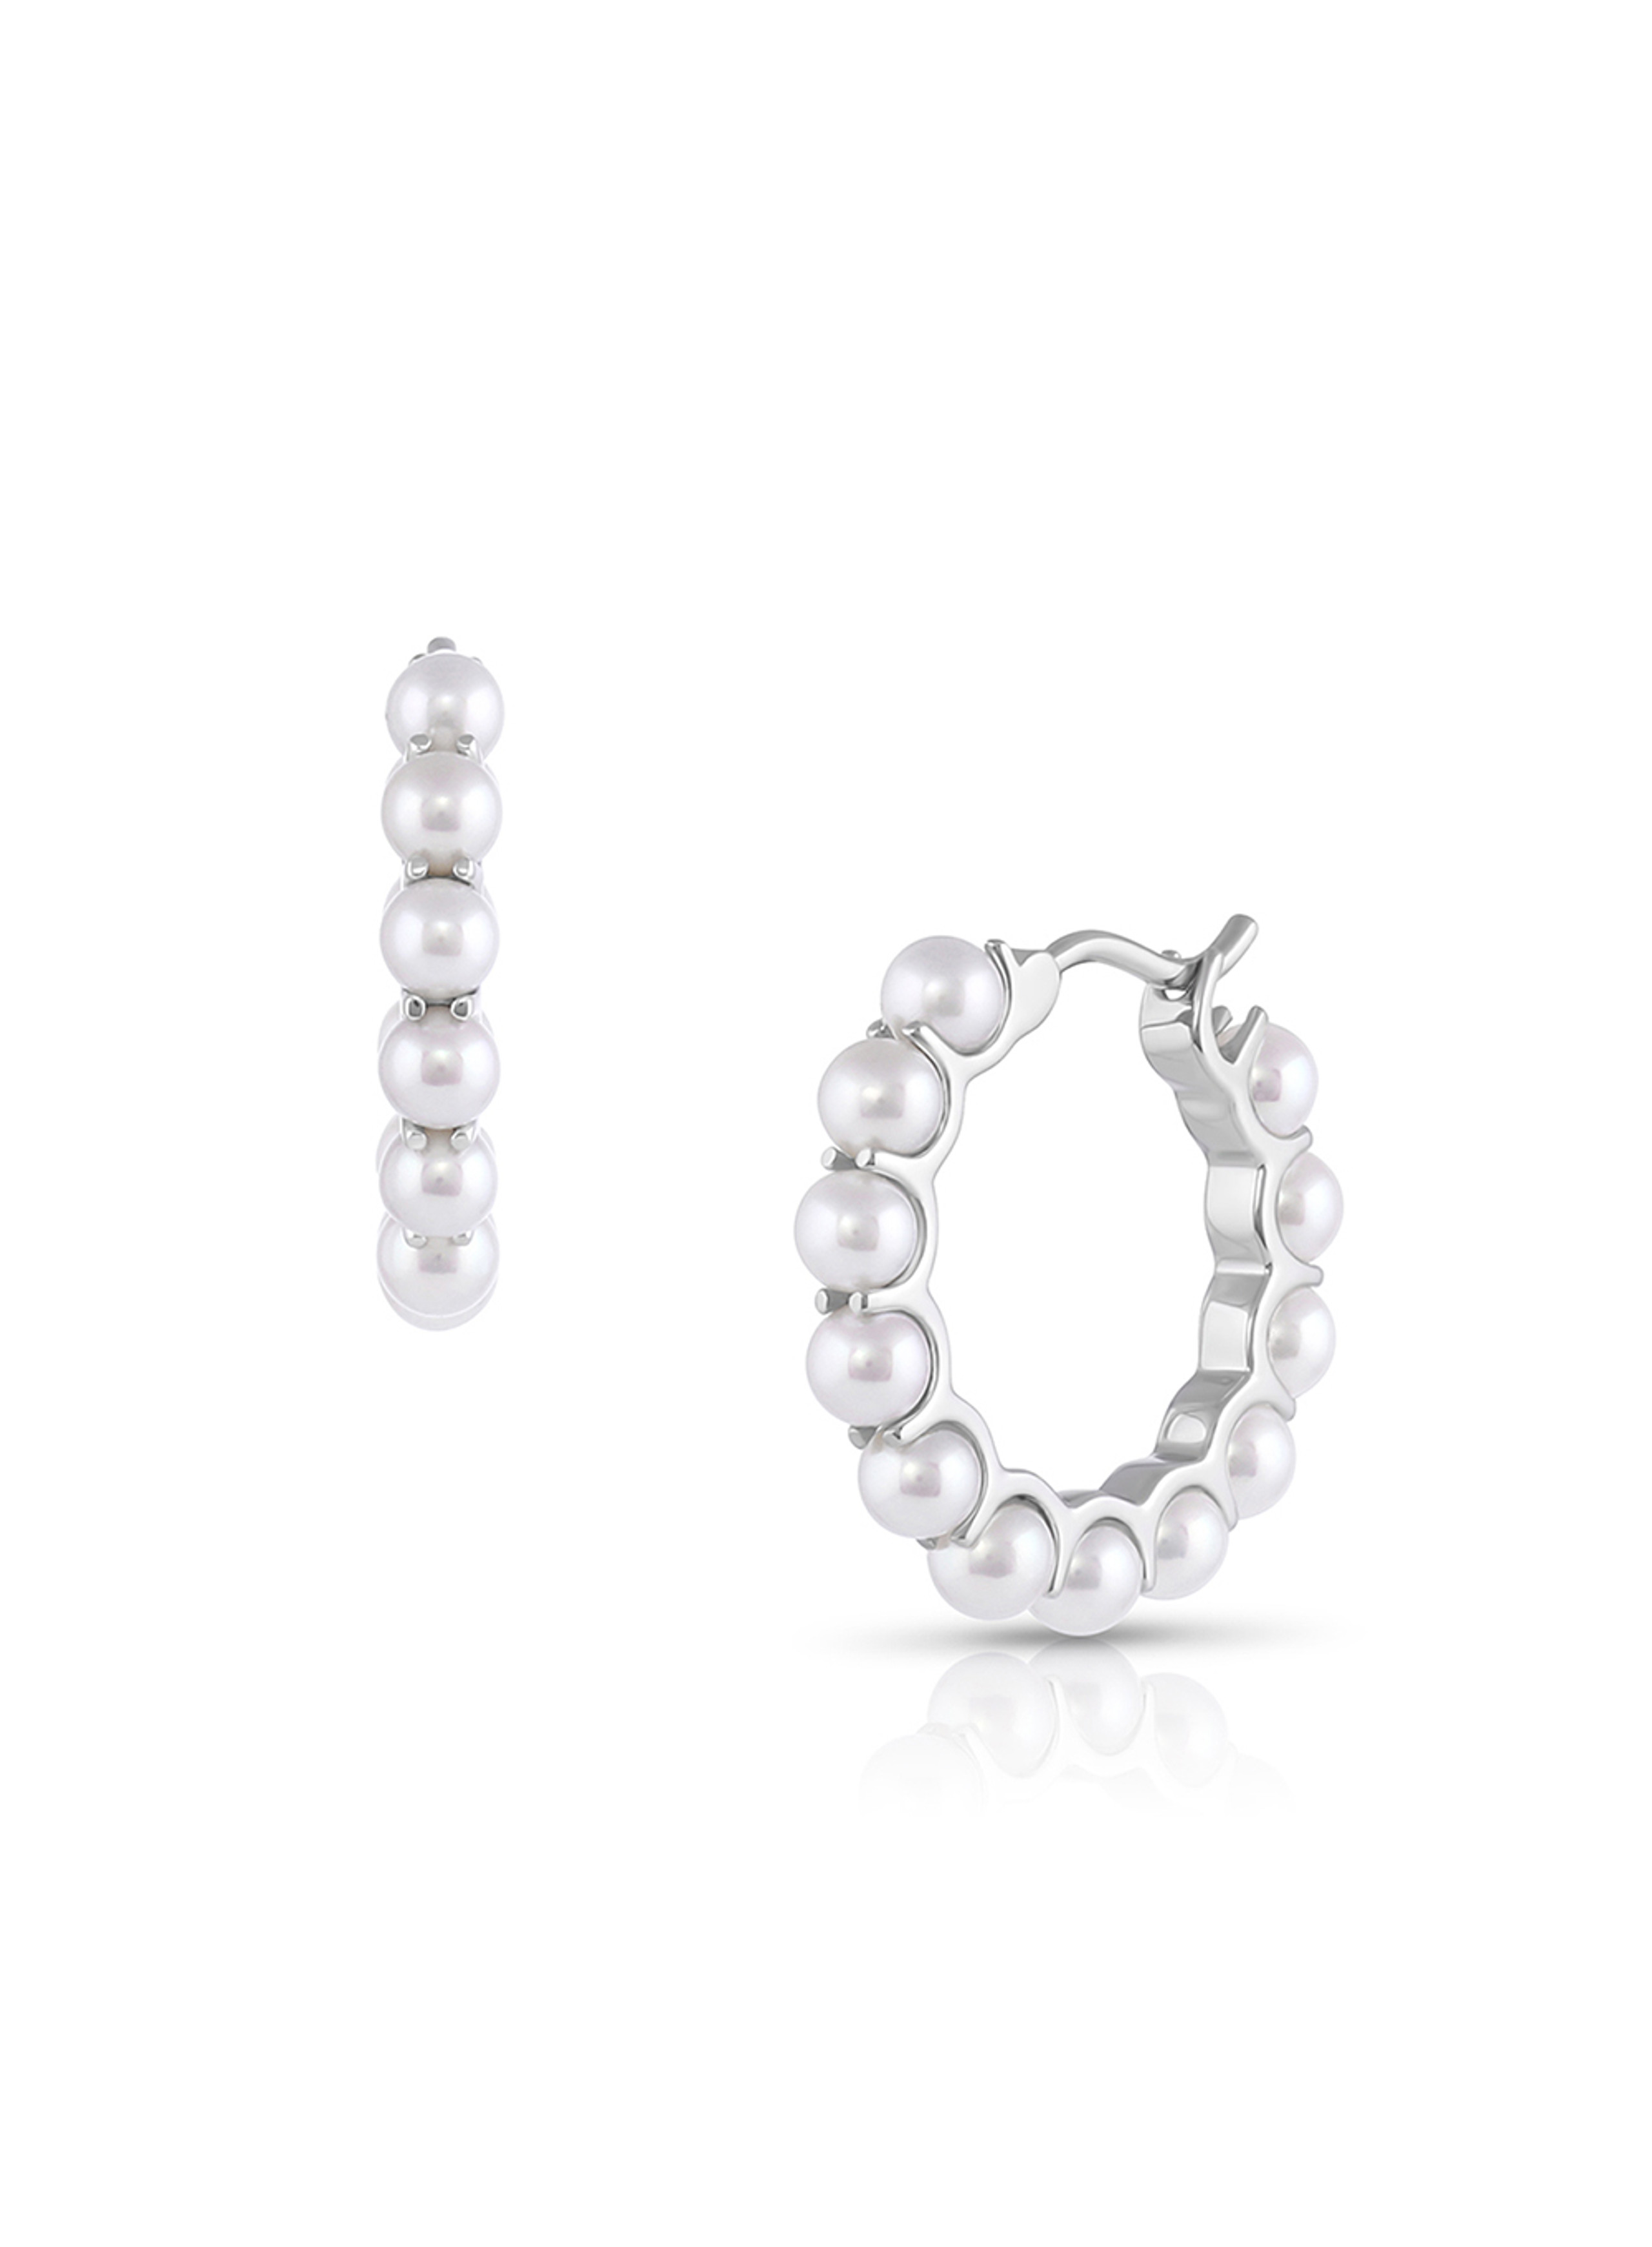 Pearl Jewelry - Earrings - Page 1 - Baggins Pearls